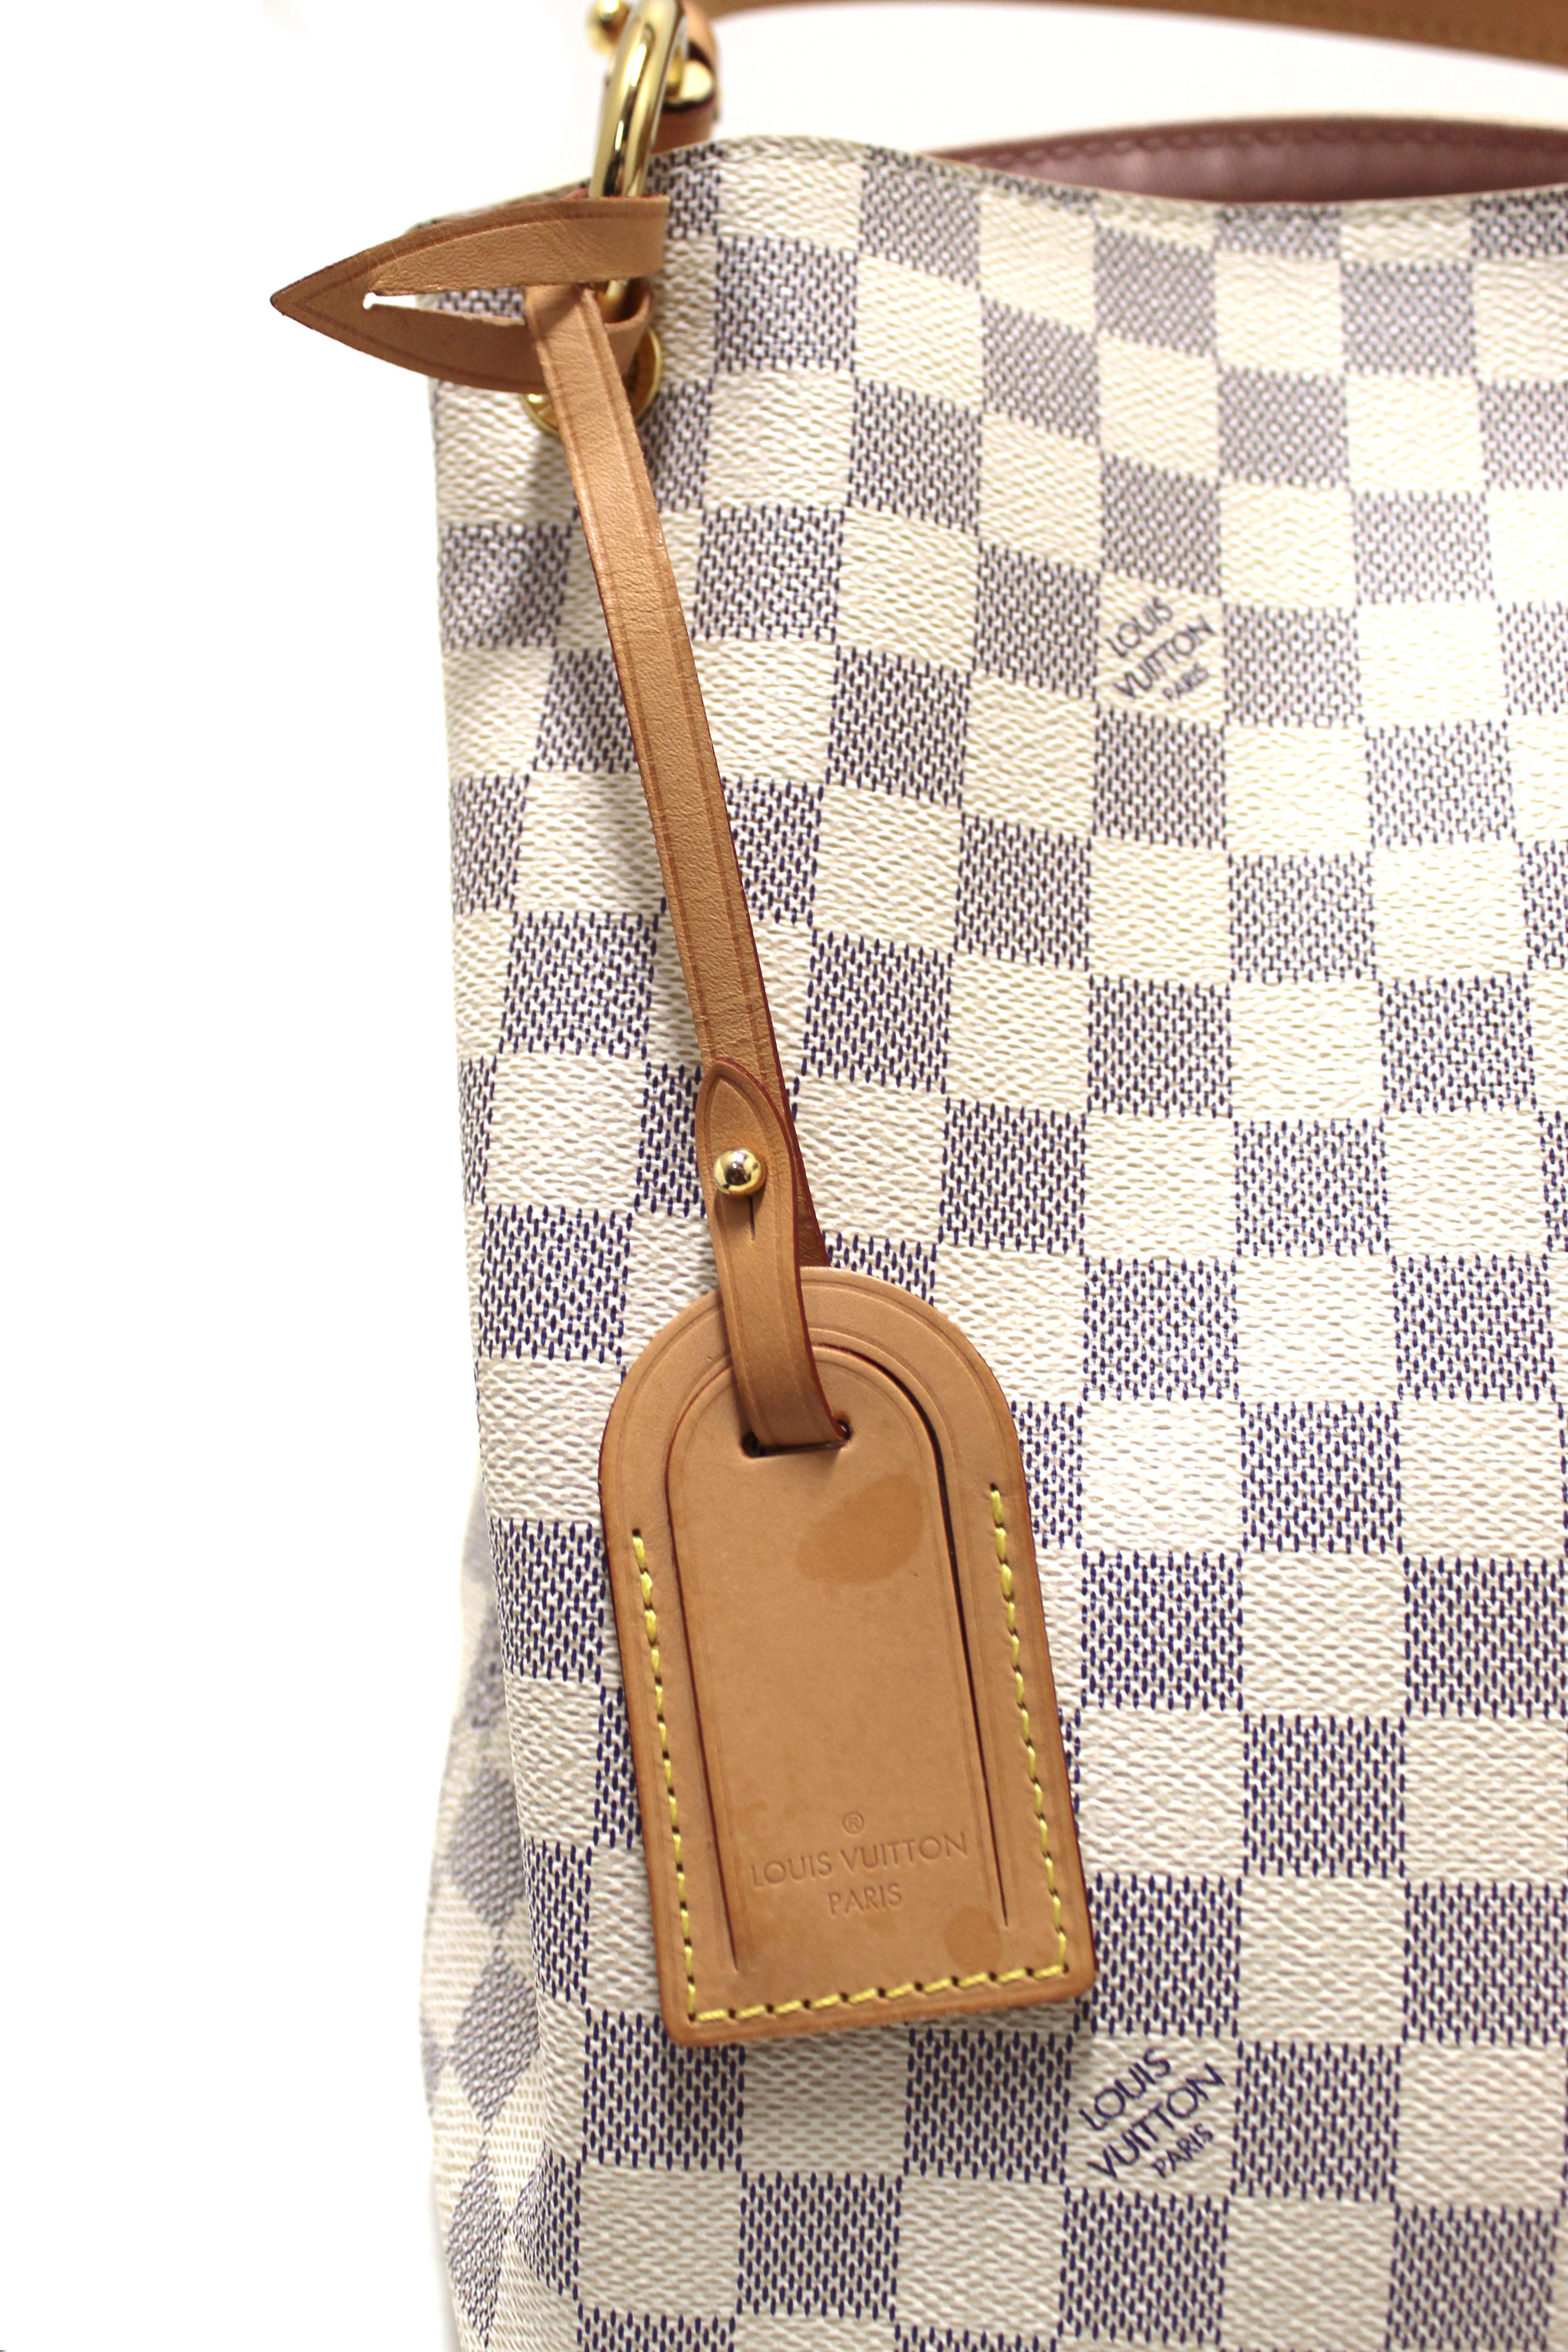 Authentic Louis Vuitton Damier Azur Graceful PM Hobo Shoulder Bag